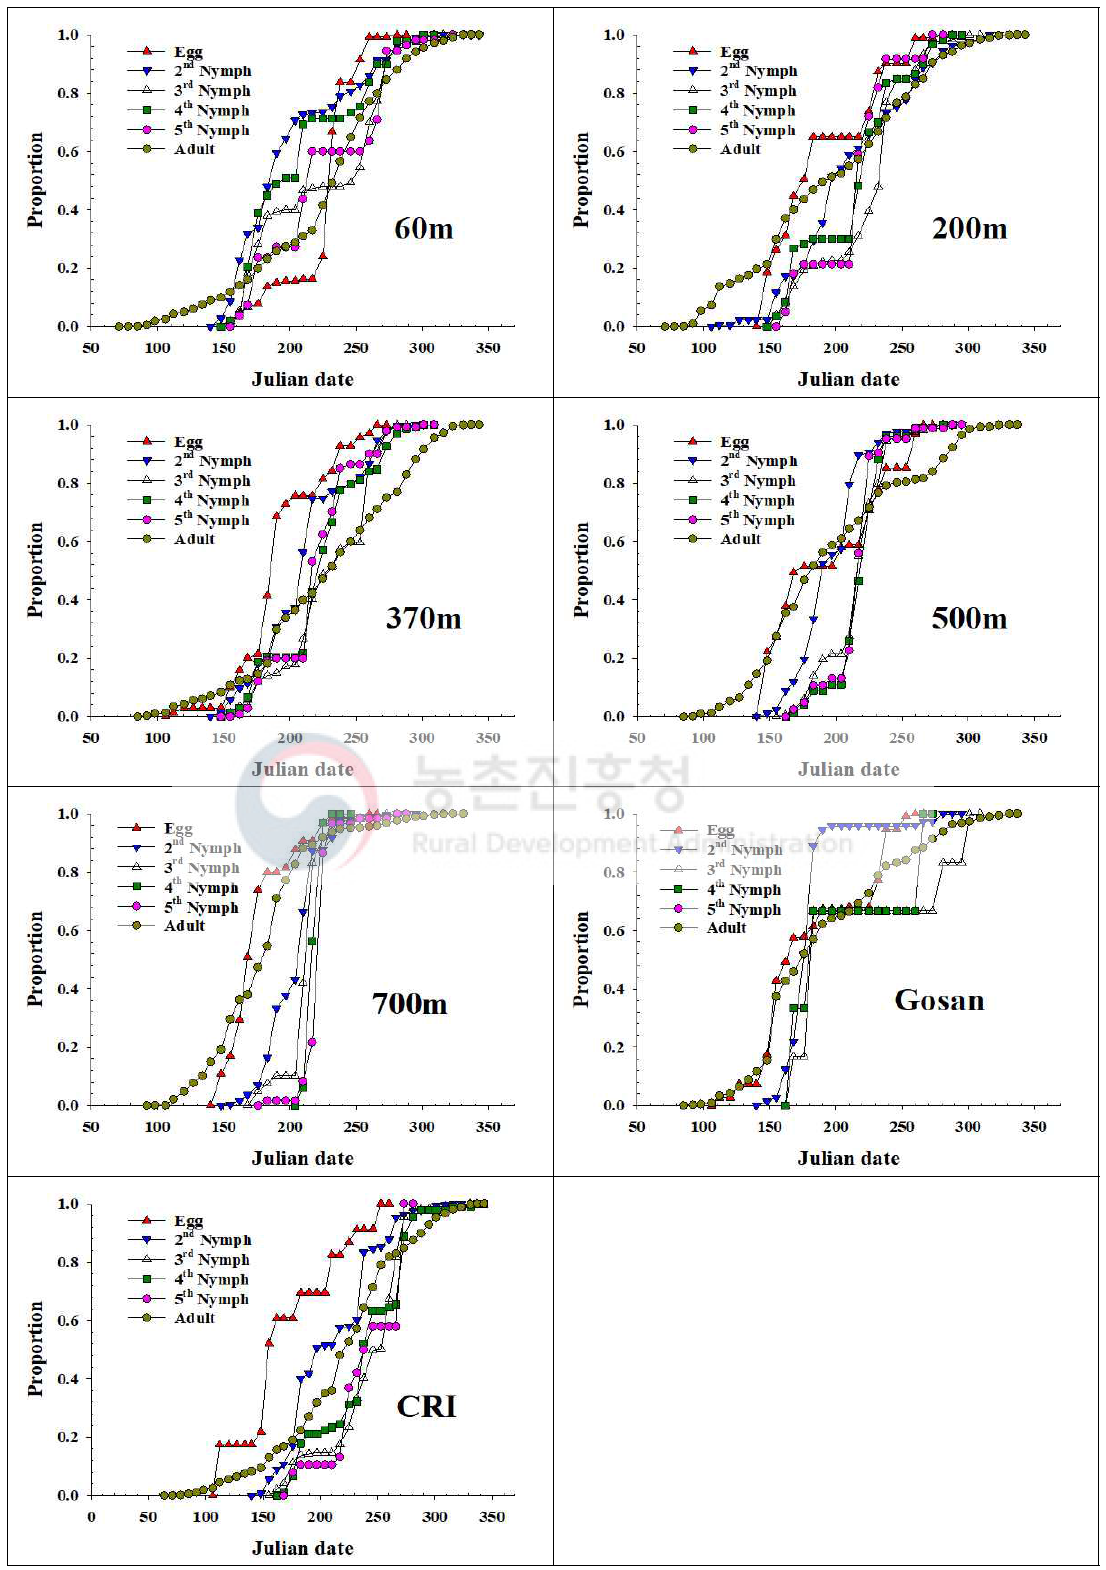 제주지역 톱다리개미허리노린재 발육단계별 개체수 누적증가 비교(2019)